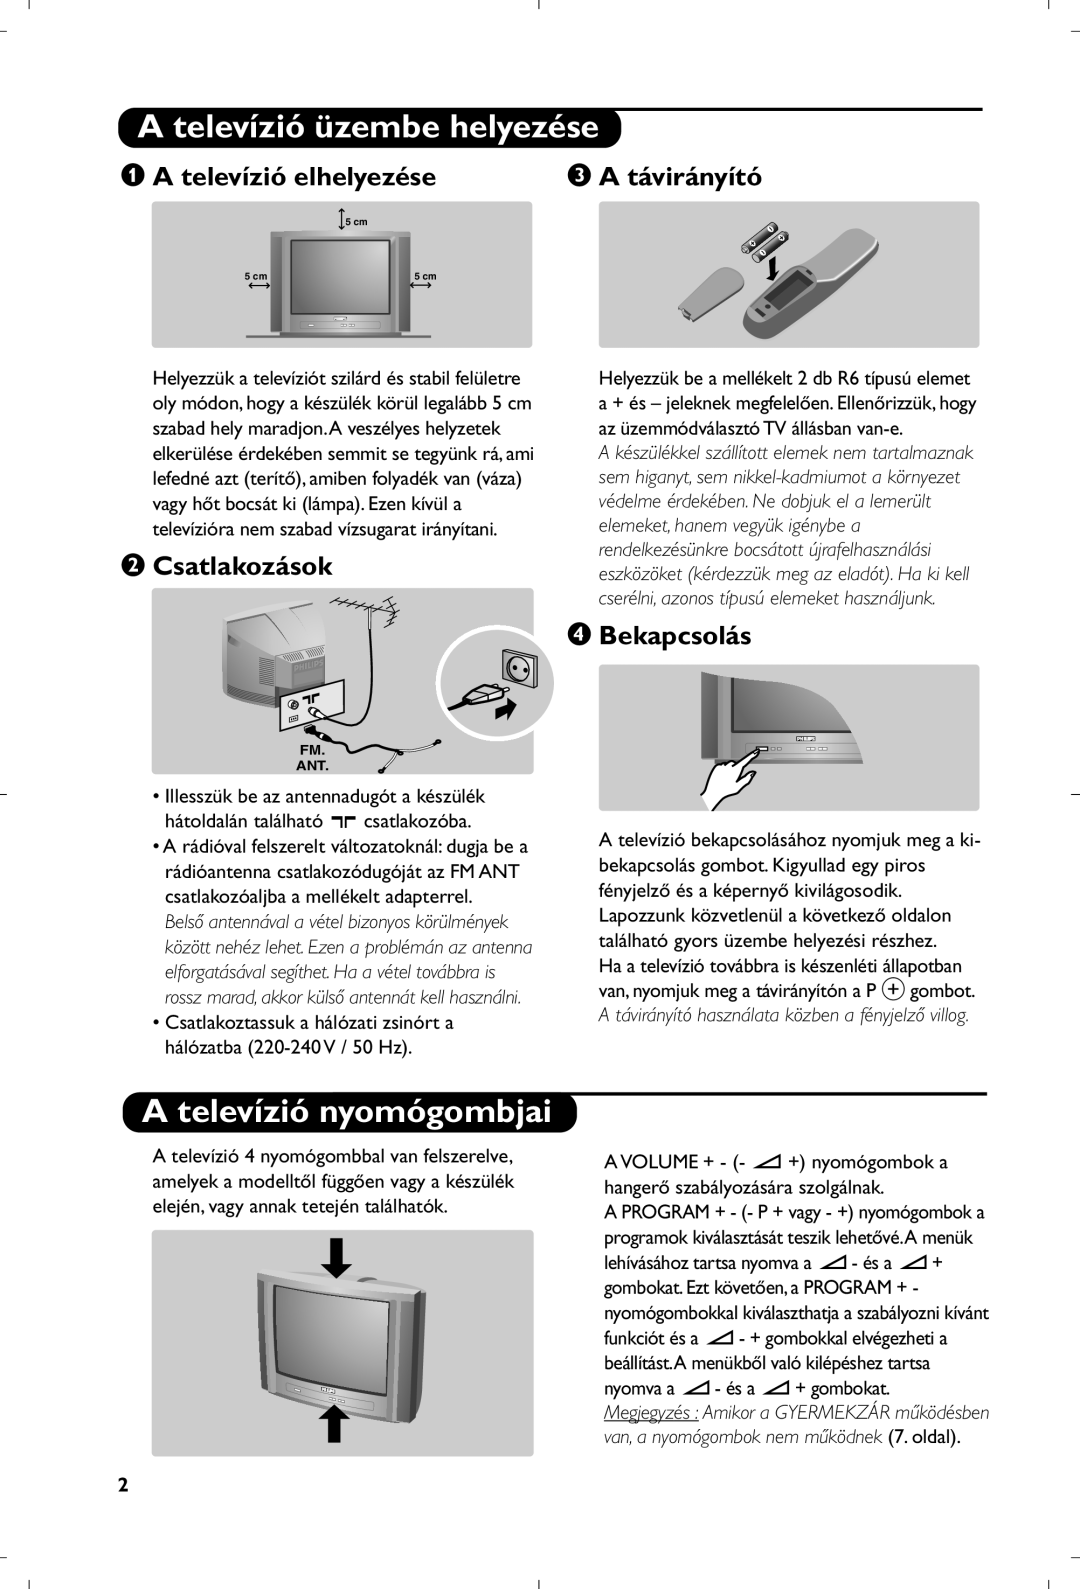 Philips 21PT4457/58 manual A televízió üzembe helyezése, A televízió nyomógombjai, “ A távirányító, é Csatlakozások 